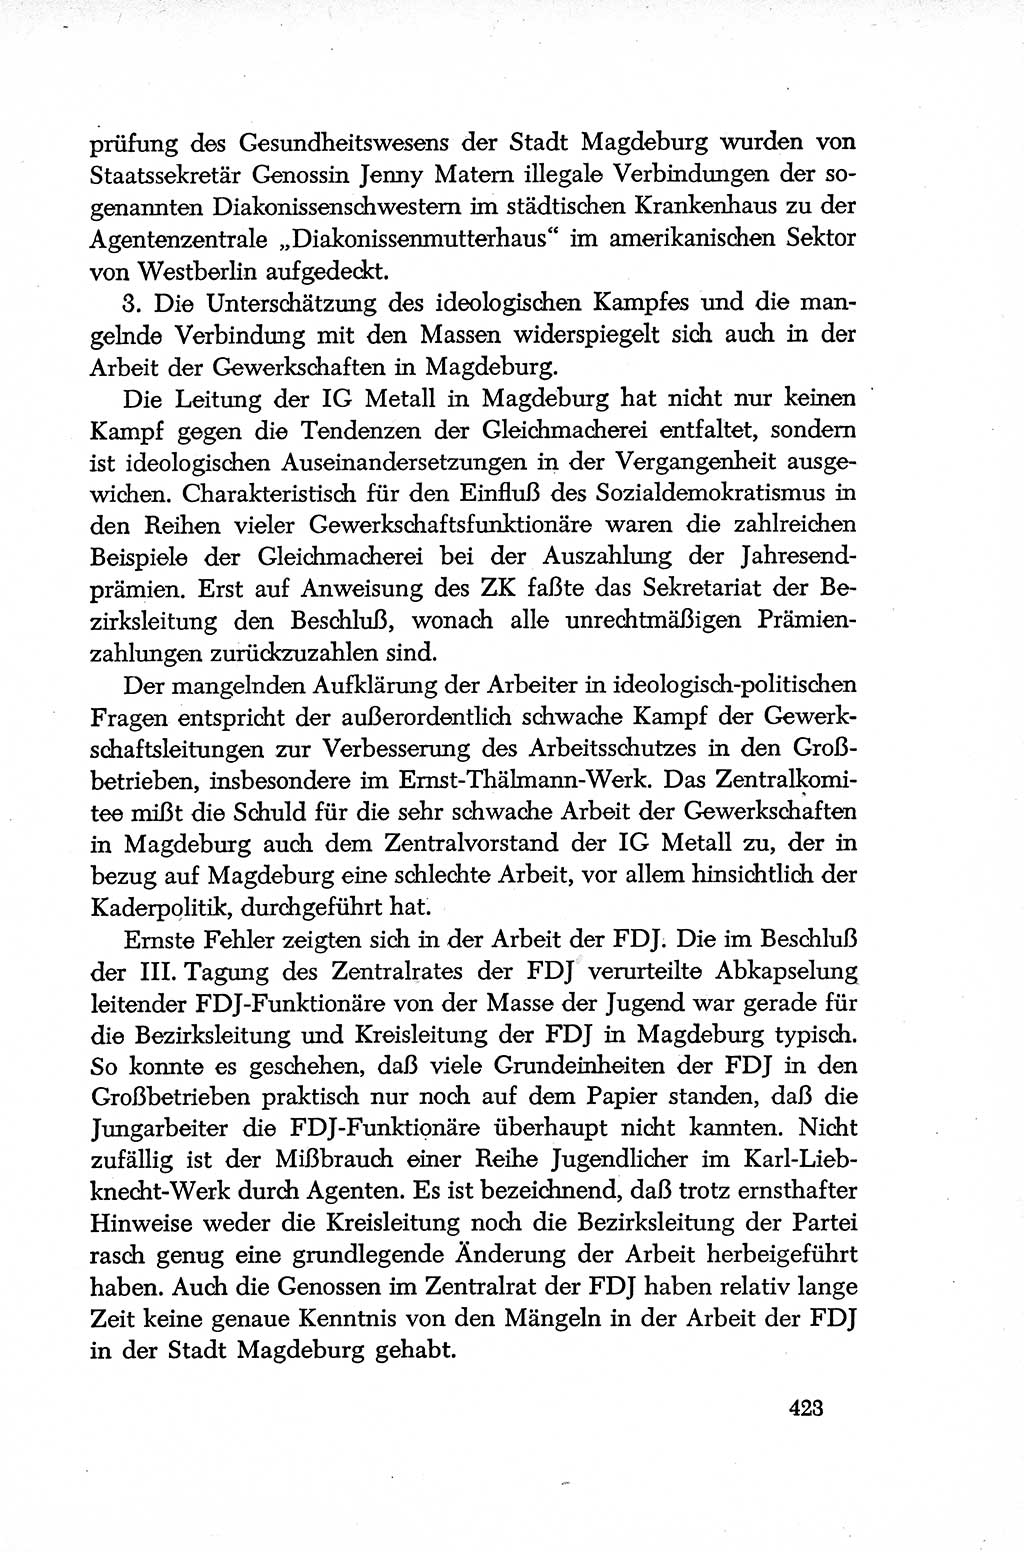 Dokumente der Sozialistischen Einheitspartei Deutschlands (SED) [Deutsche Demokratische Republik (DDR)] 1952-1953, Seite 423 (Dok. SED DDR 1952-1953, S. 423)